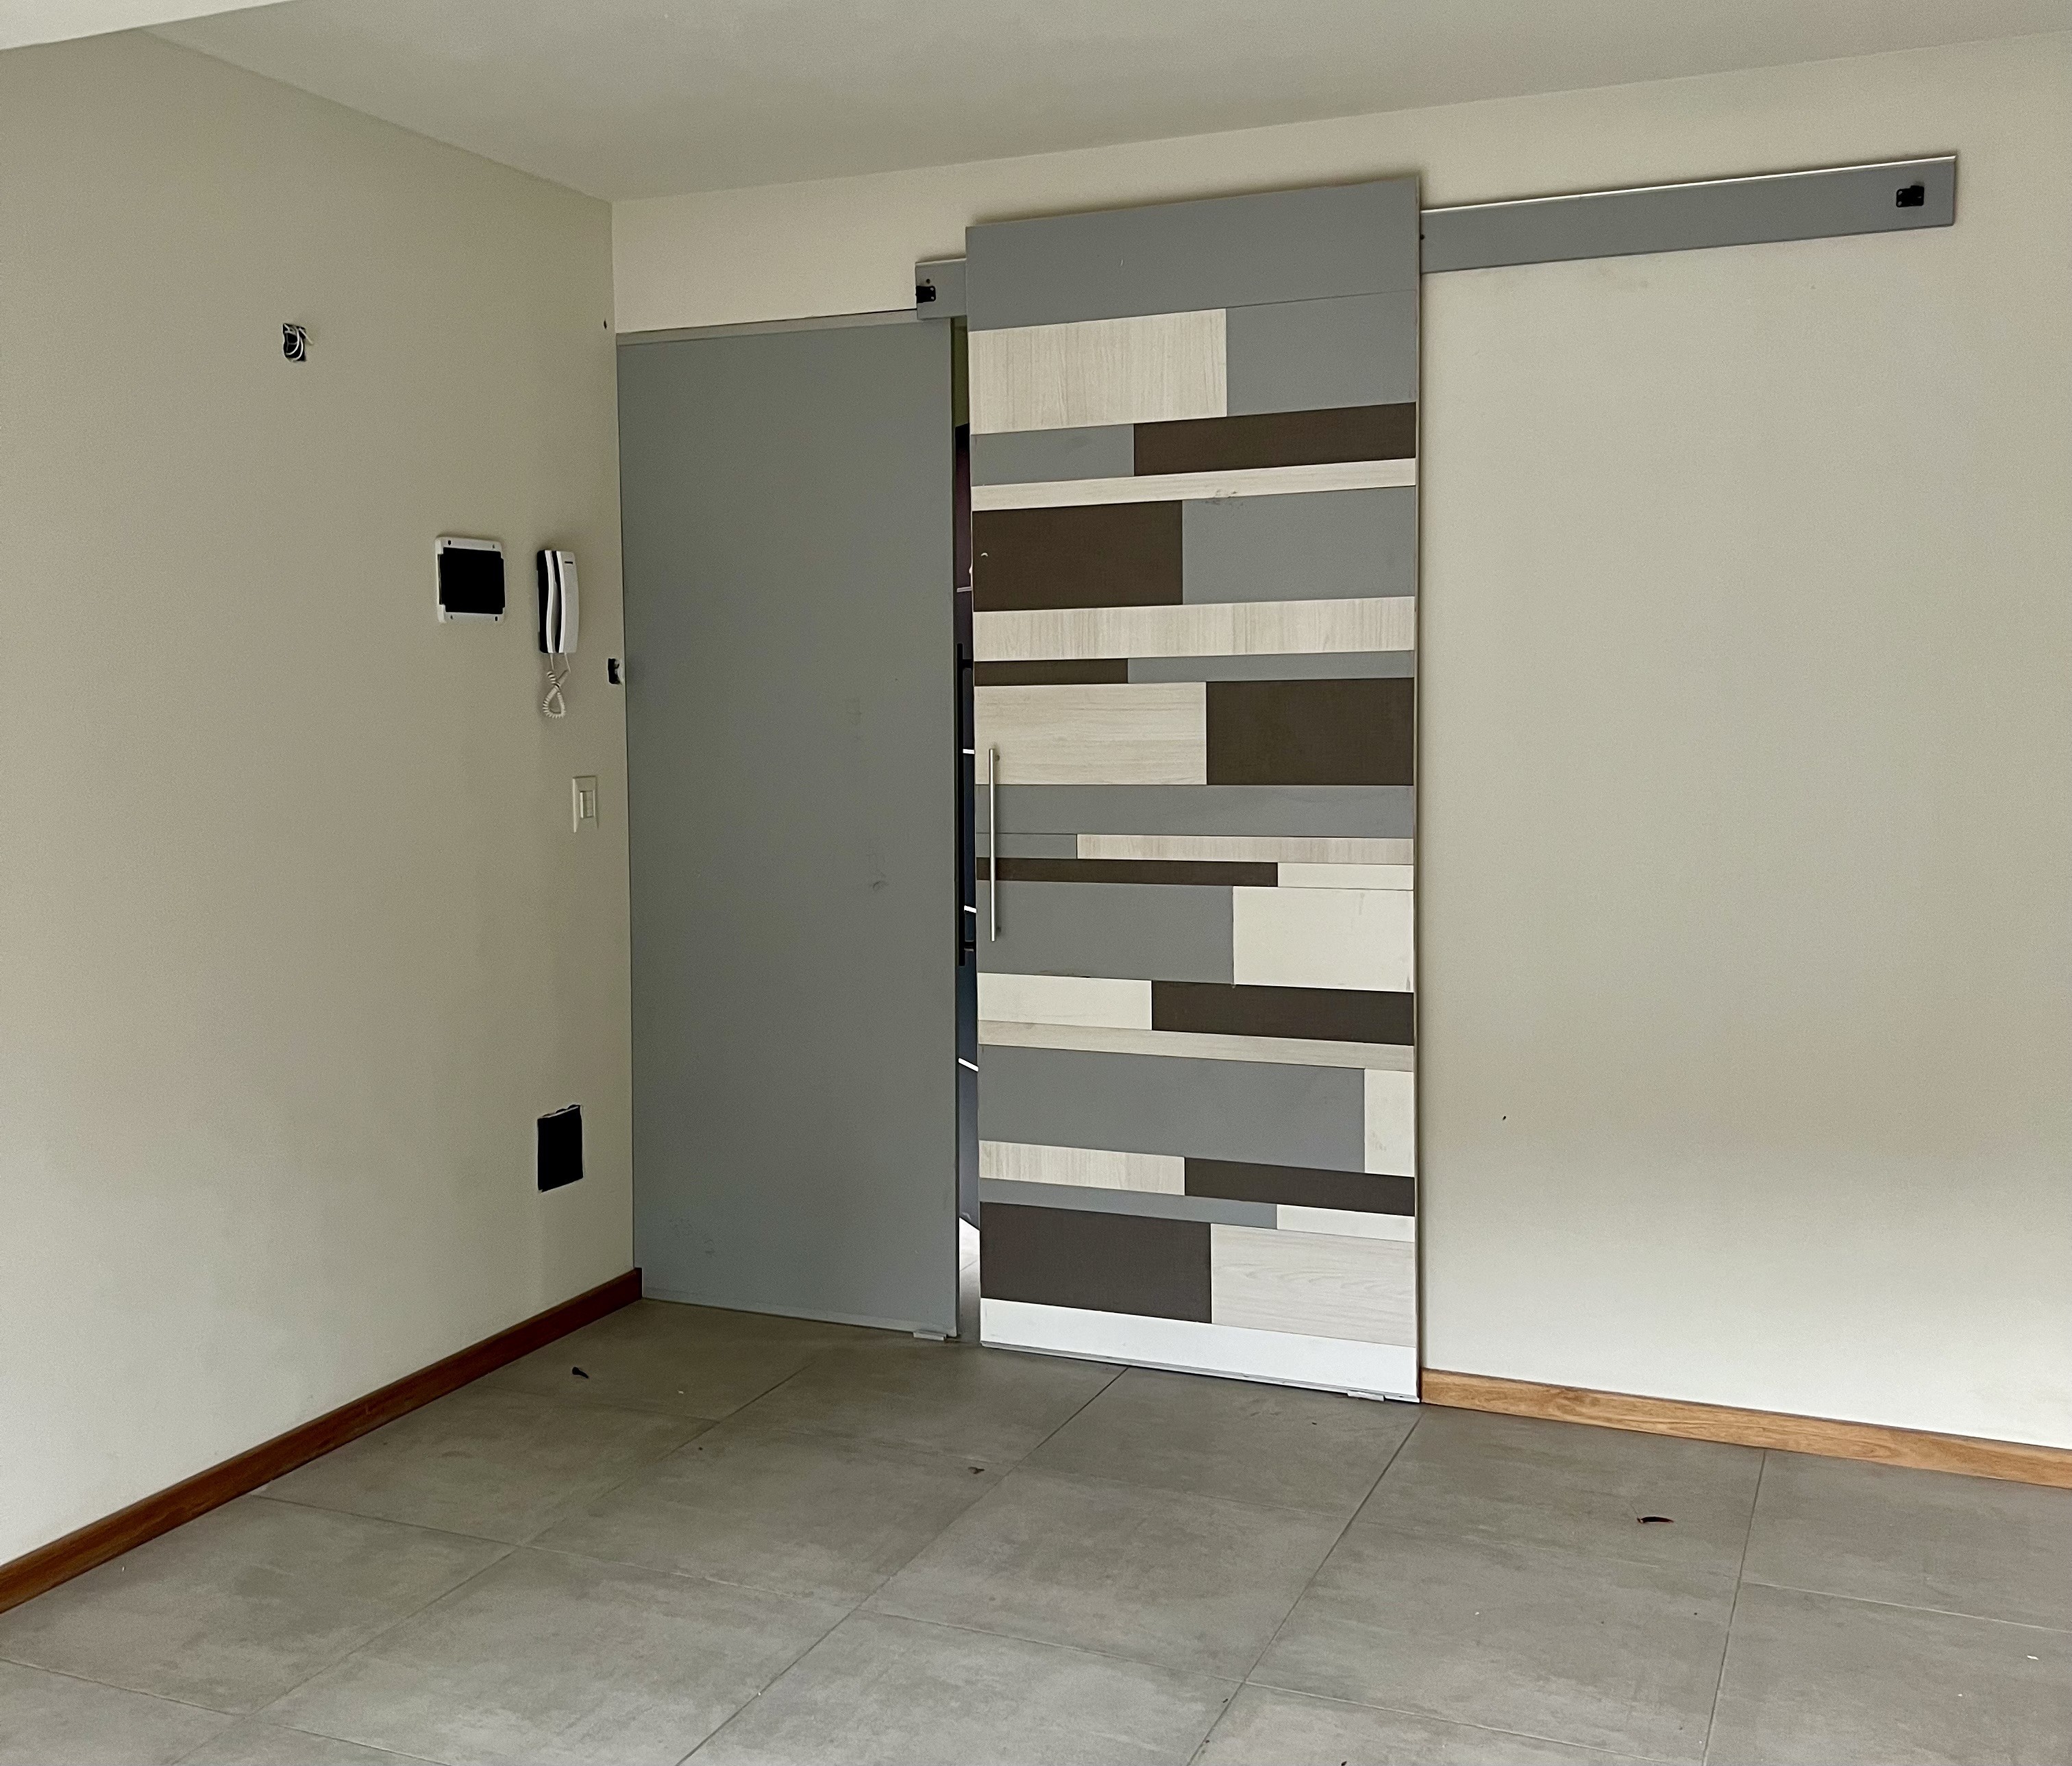 D209 - Monoambiente a estrenar de 1 dormitorio 48  m2 y 15 m2 de terraza  - Bajada de los Andes - Zona Centro